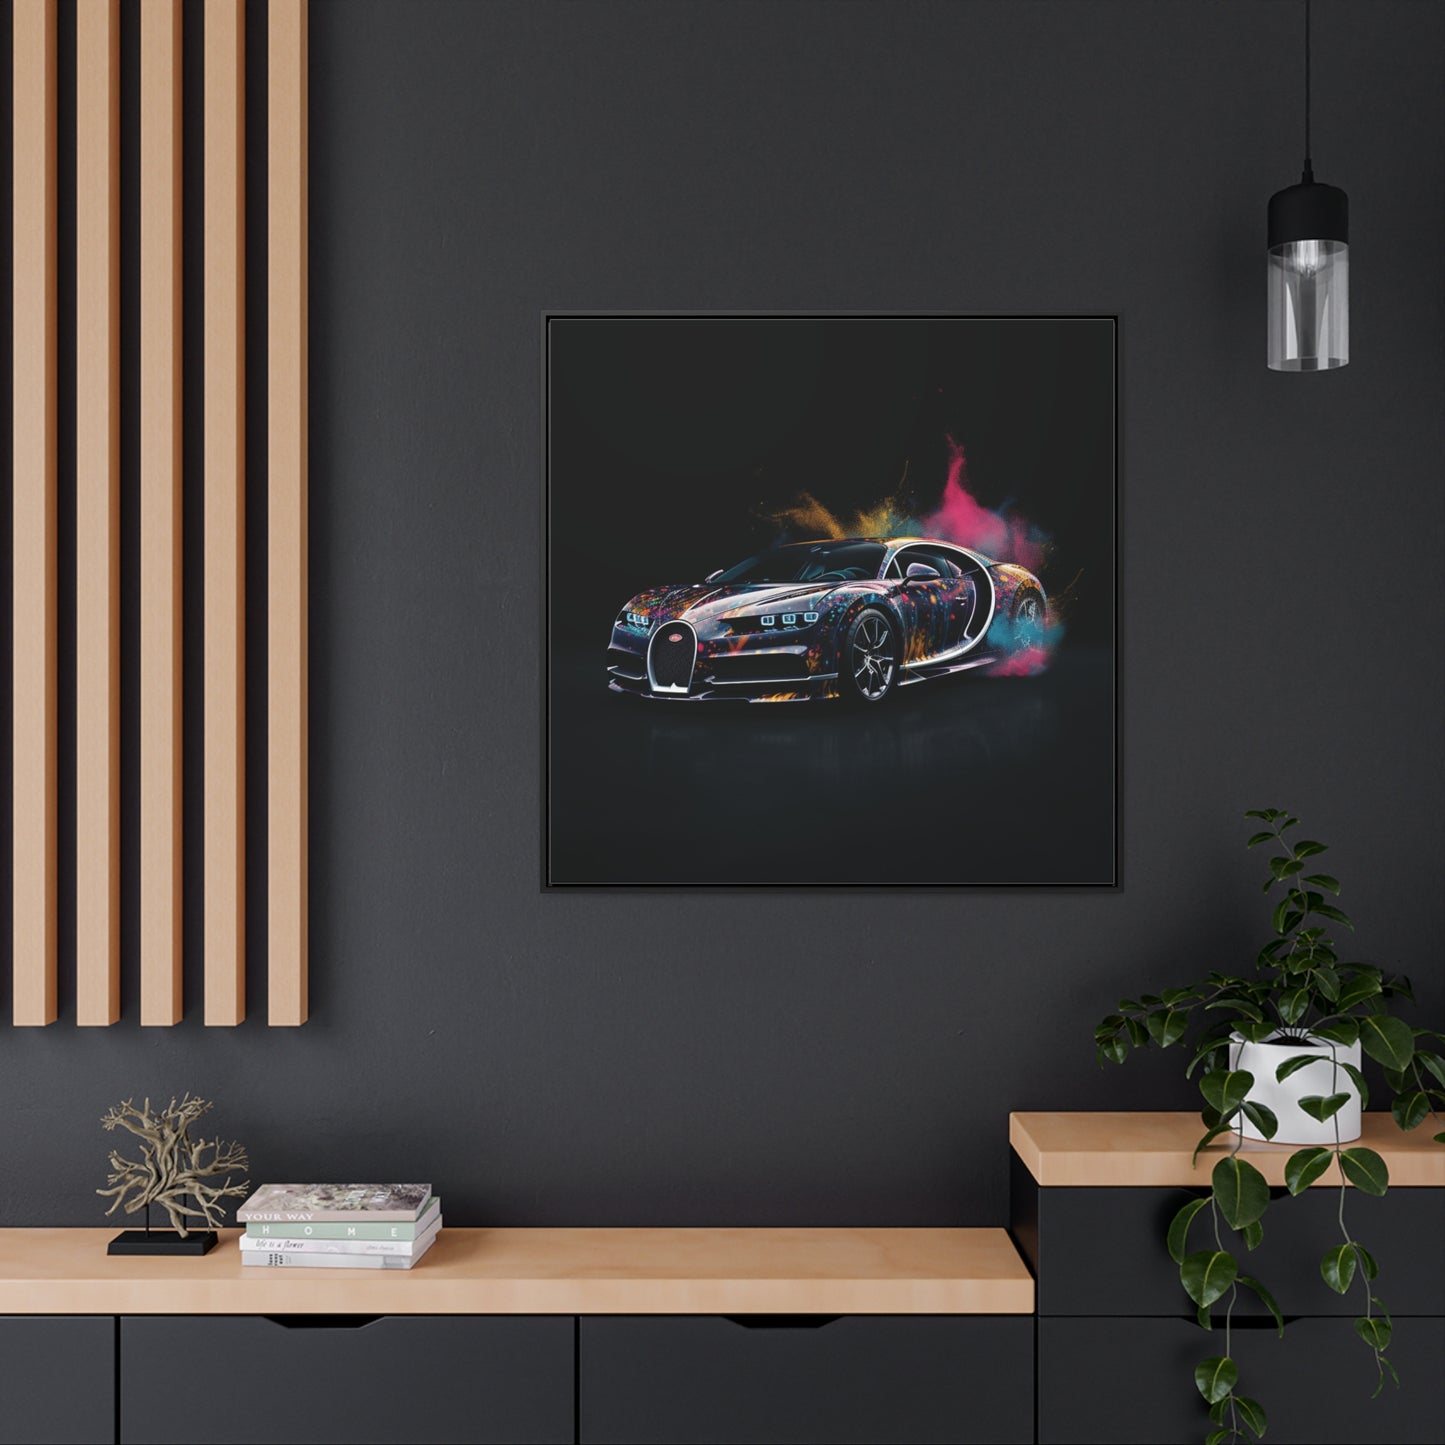 Gallery Canvas Wraps, Square Frame Hyper Bugatti 4